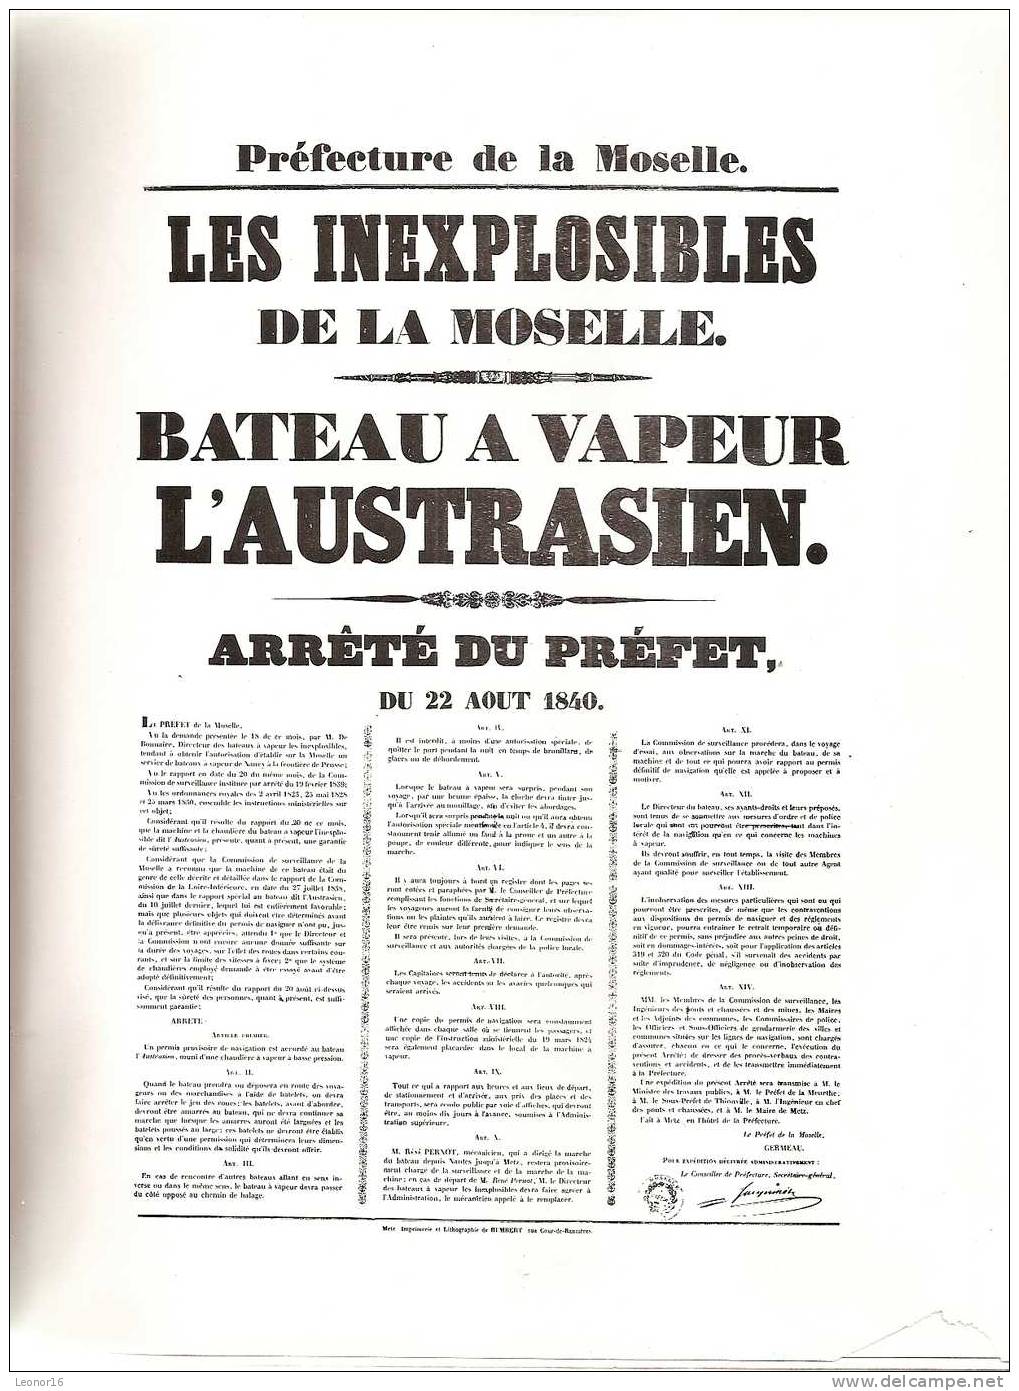 * LE PAYS LORRAIN 1959 - N°3 *   -    REVUE REGIONALE TRIMESTRIELLE ILLUSTREE(26 PAGES)Fondée par Charles SADOUL en 1904